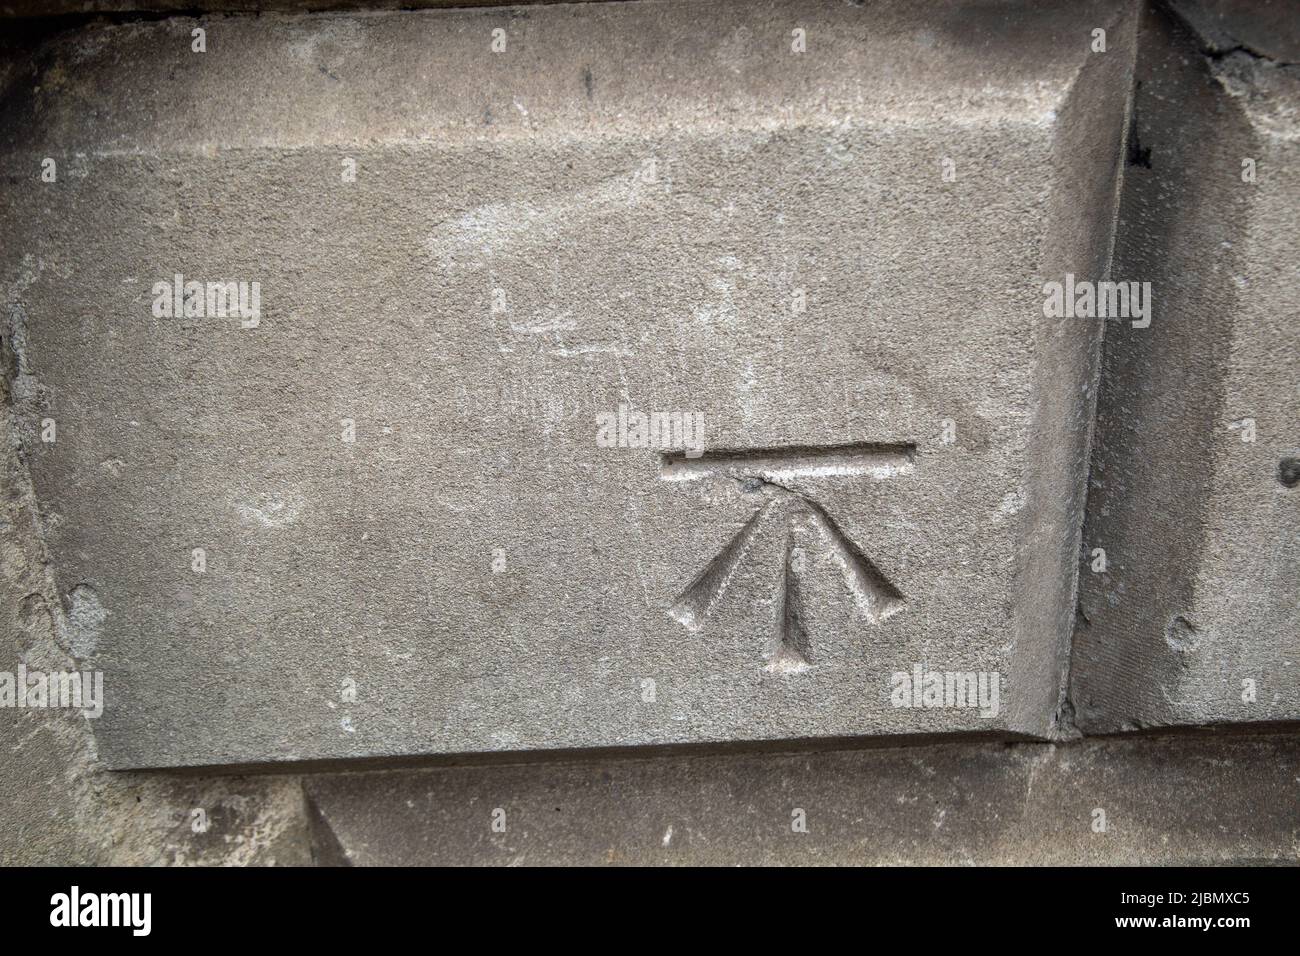 Masons marks on stonework Stock Photo